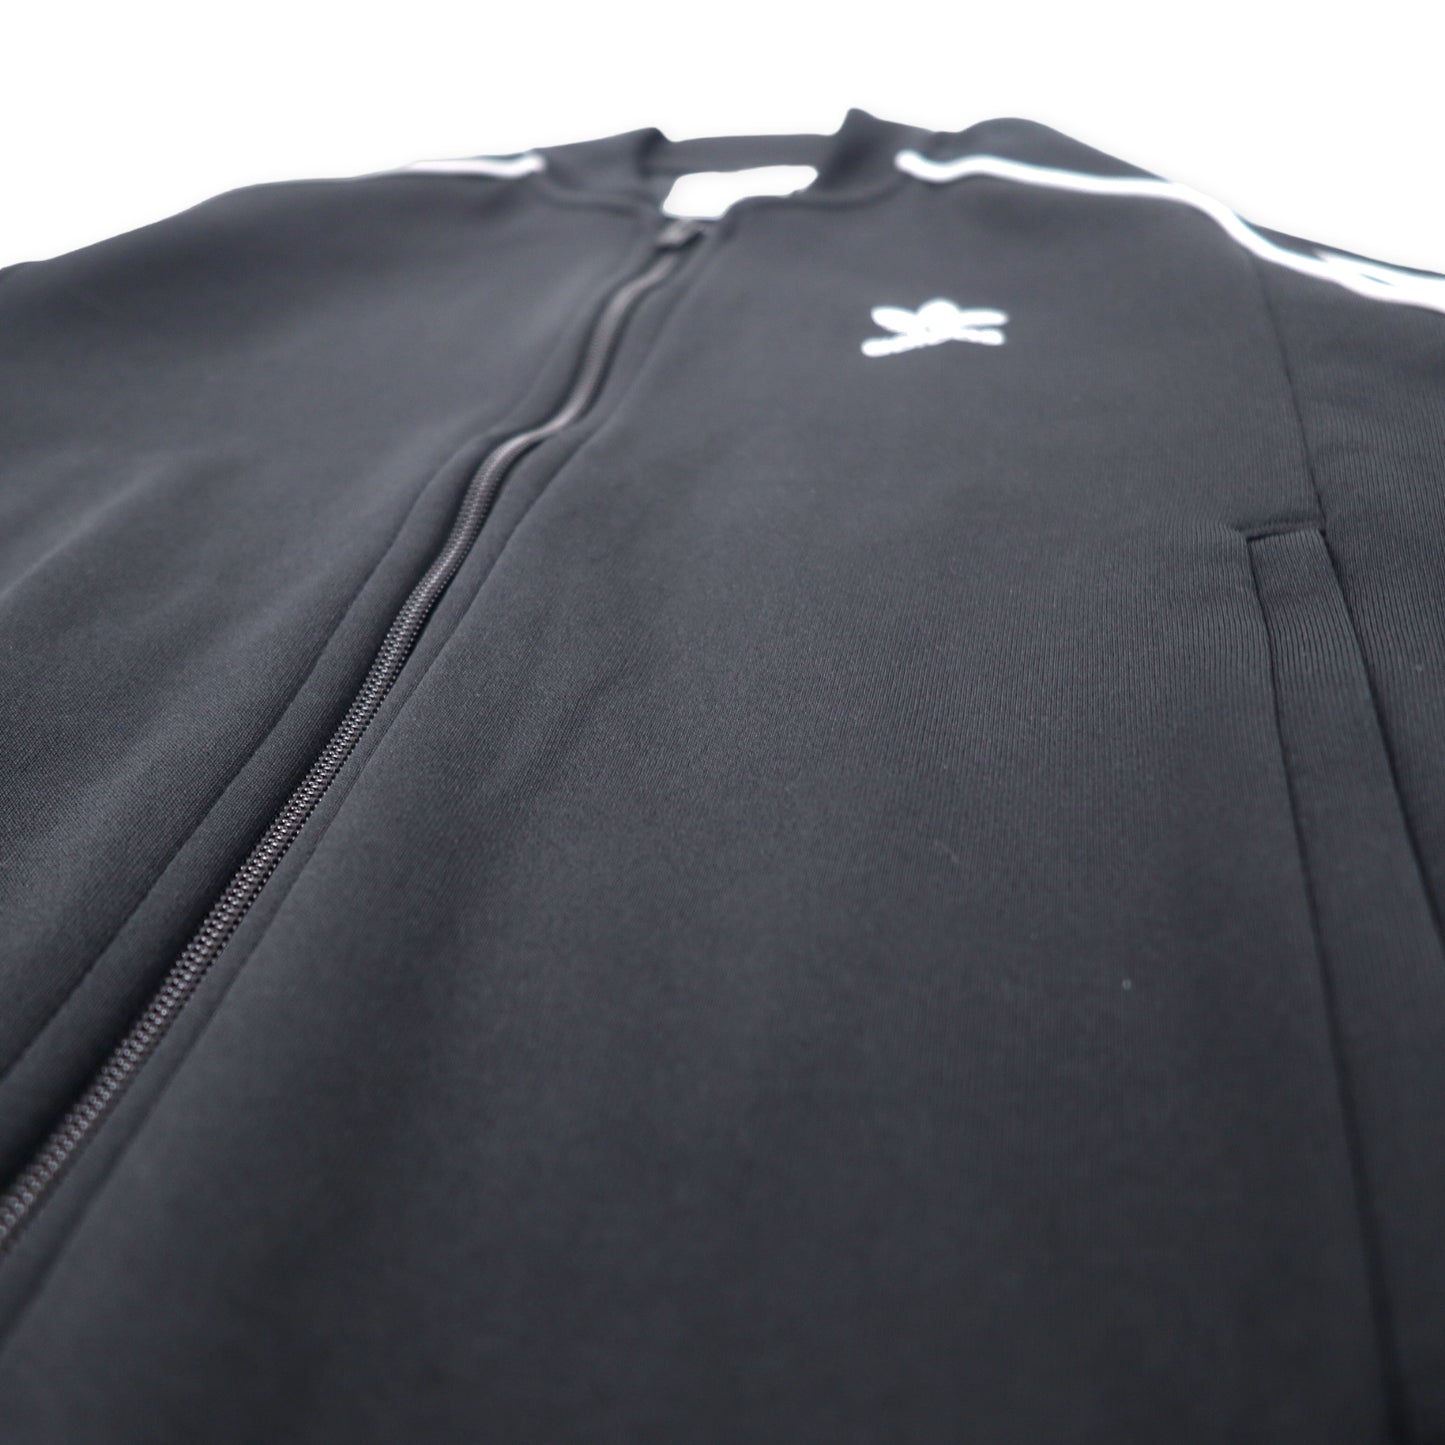 adidas originals アディカラー クラシック PRIMEBLUE SST トラックジャケット ジャージ M ブラック ポリエステル ATP型 3ストライプス トレフォイルロゴ刺繍 ダブルジップ GF0198